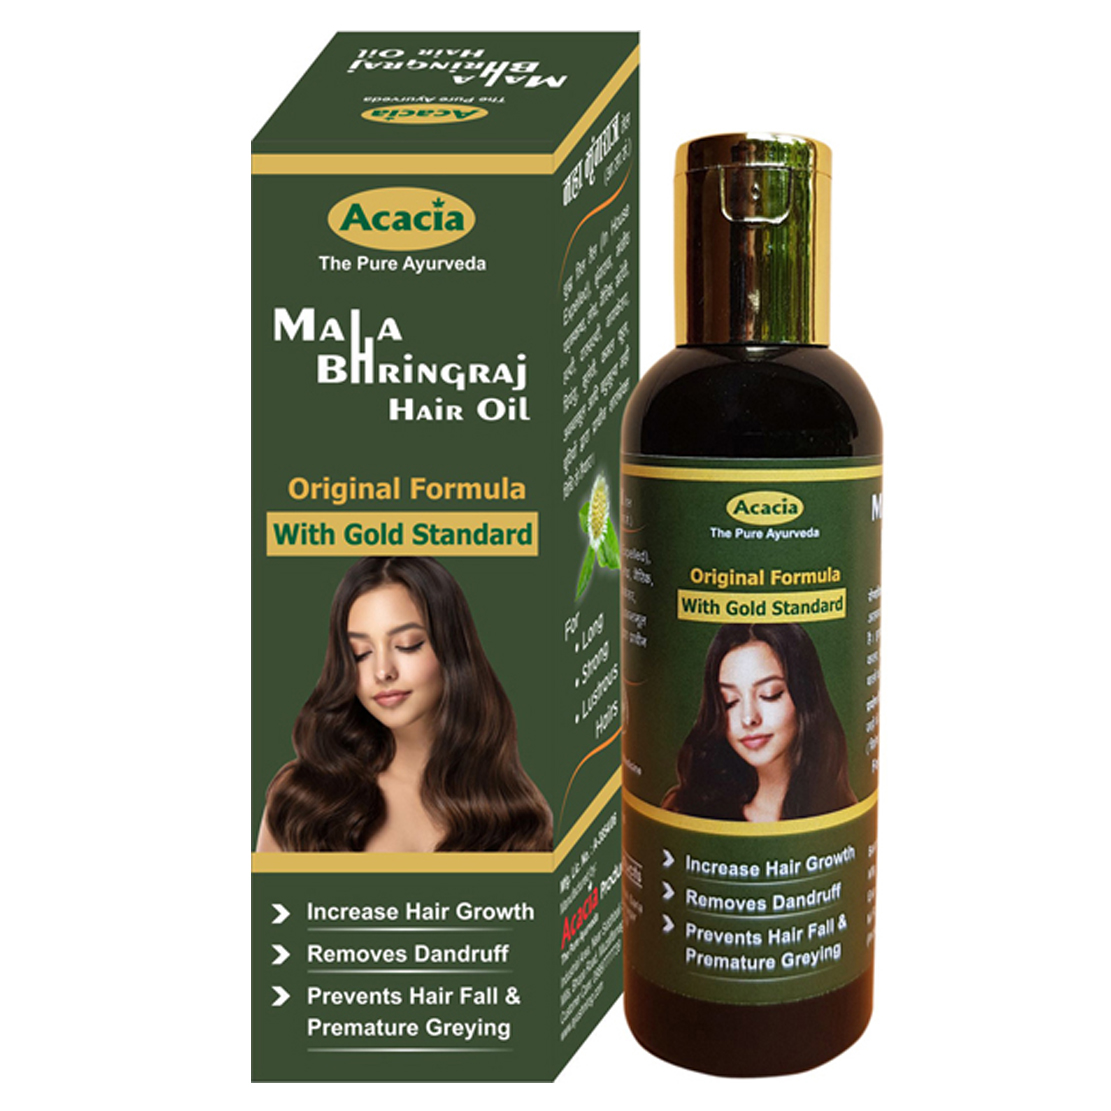 Best Mahabhringraj Hair Oil for Regrowth Hair Loss at Ayushnirog